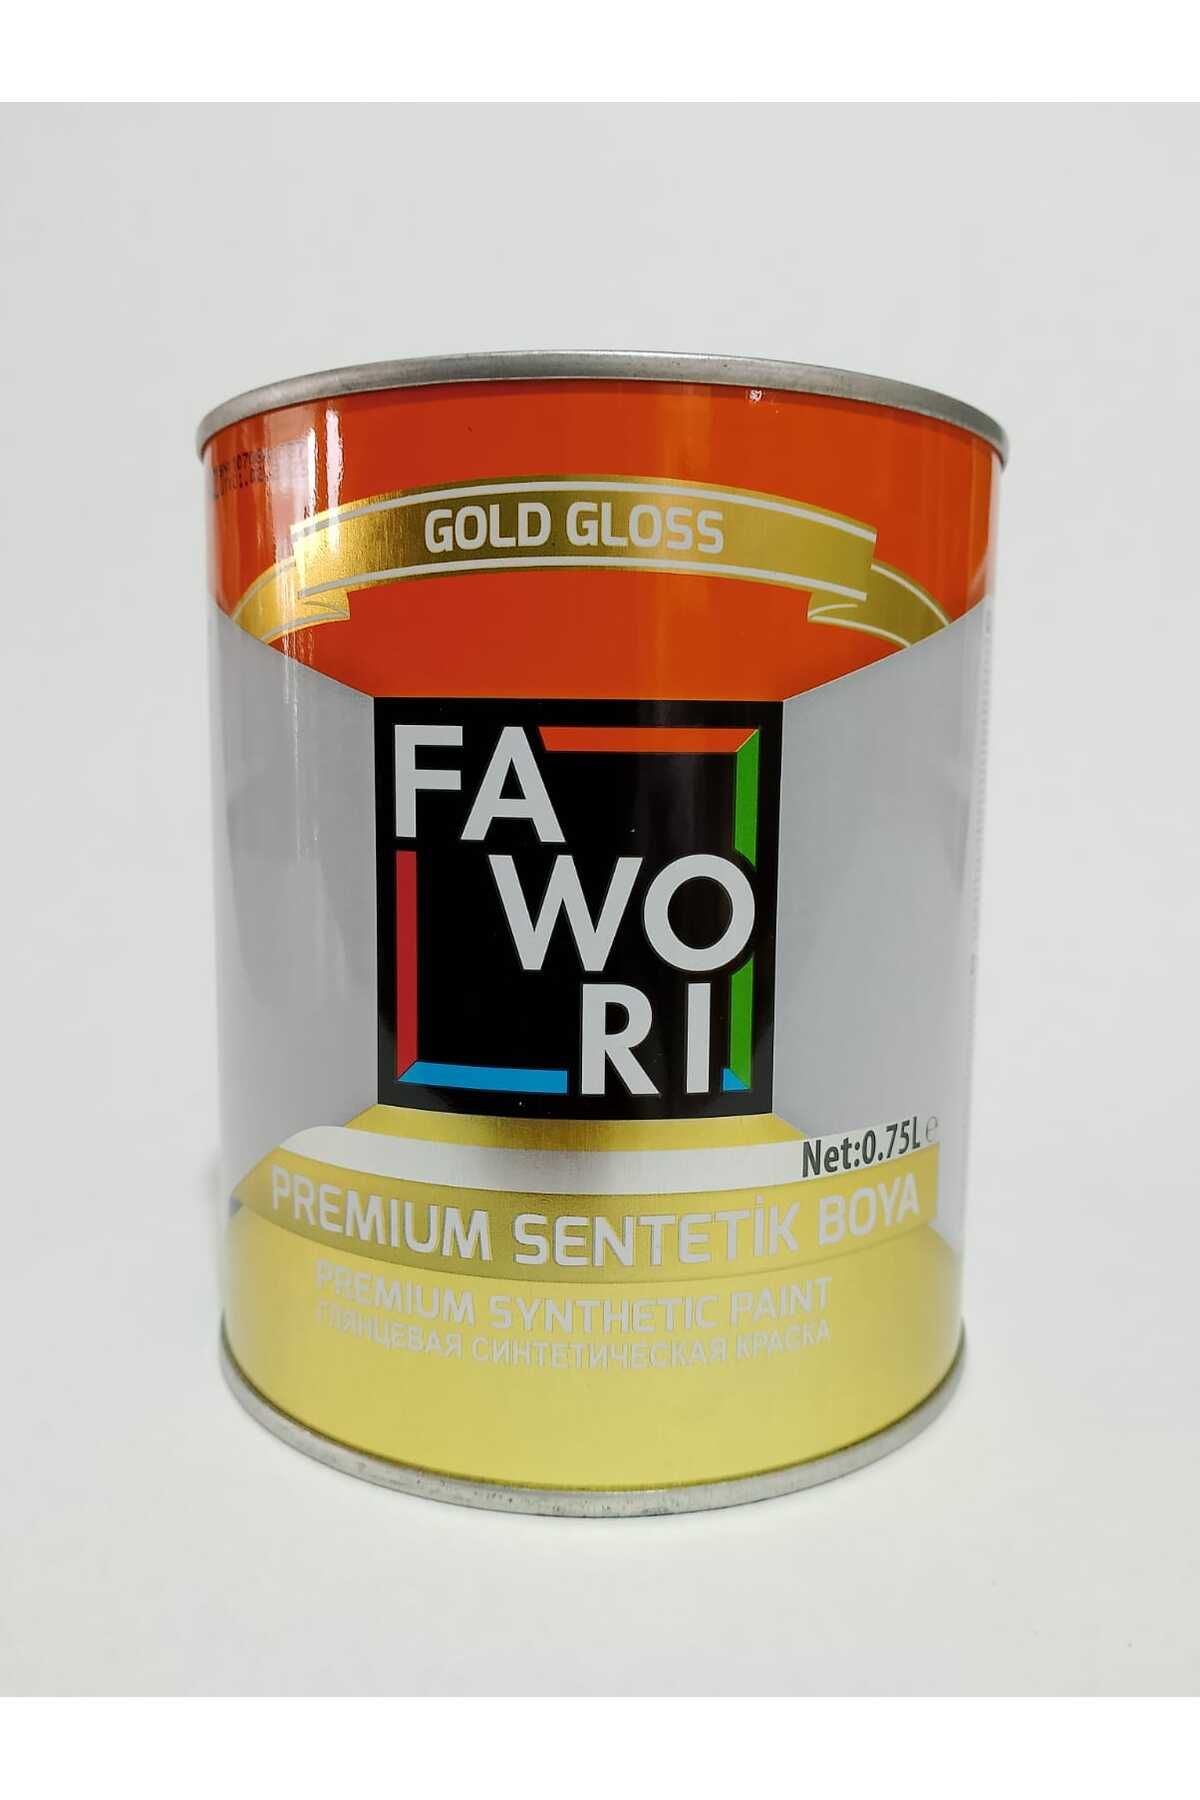 Fawori Premium Sentetik Boya 1 LT Oksit Sarı